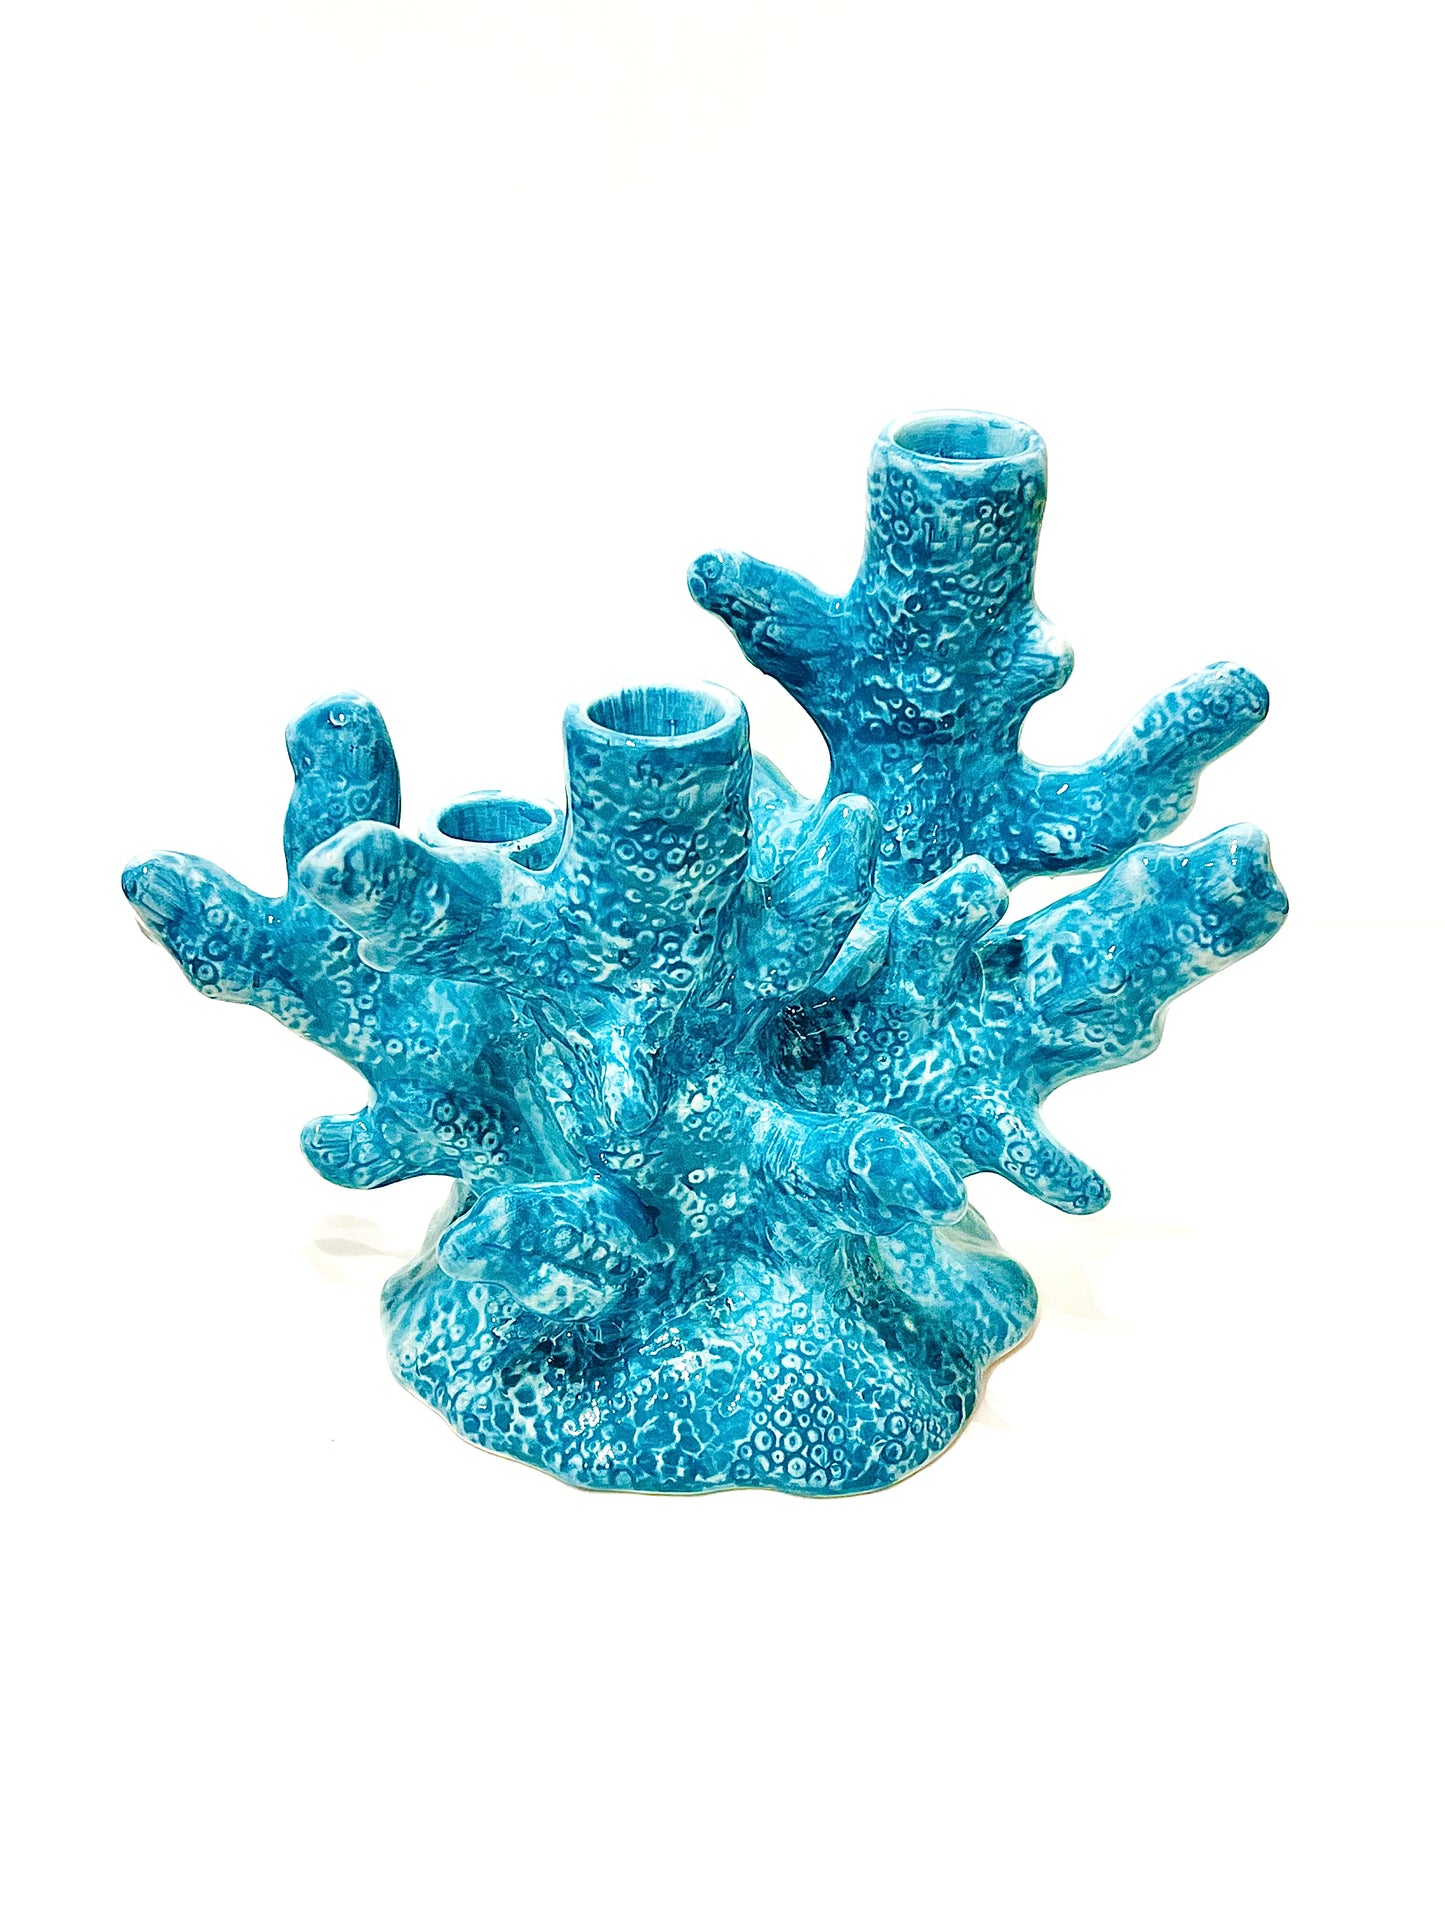 Candelabro Coral azul 3 Brazos